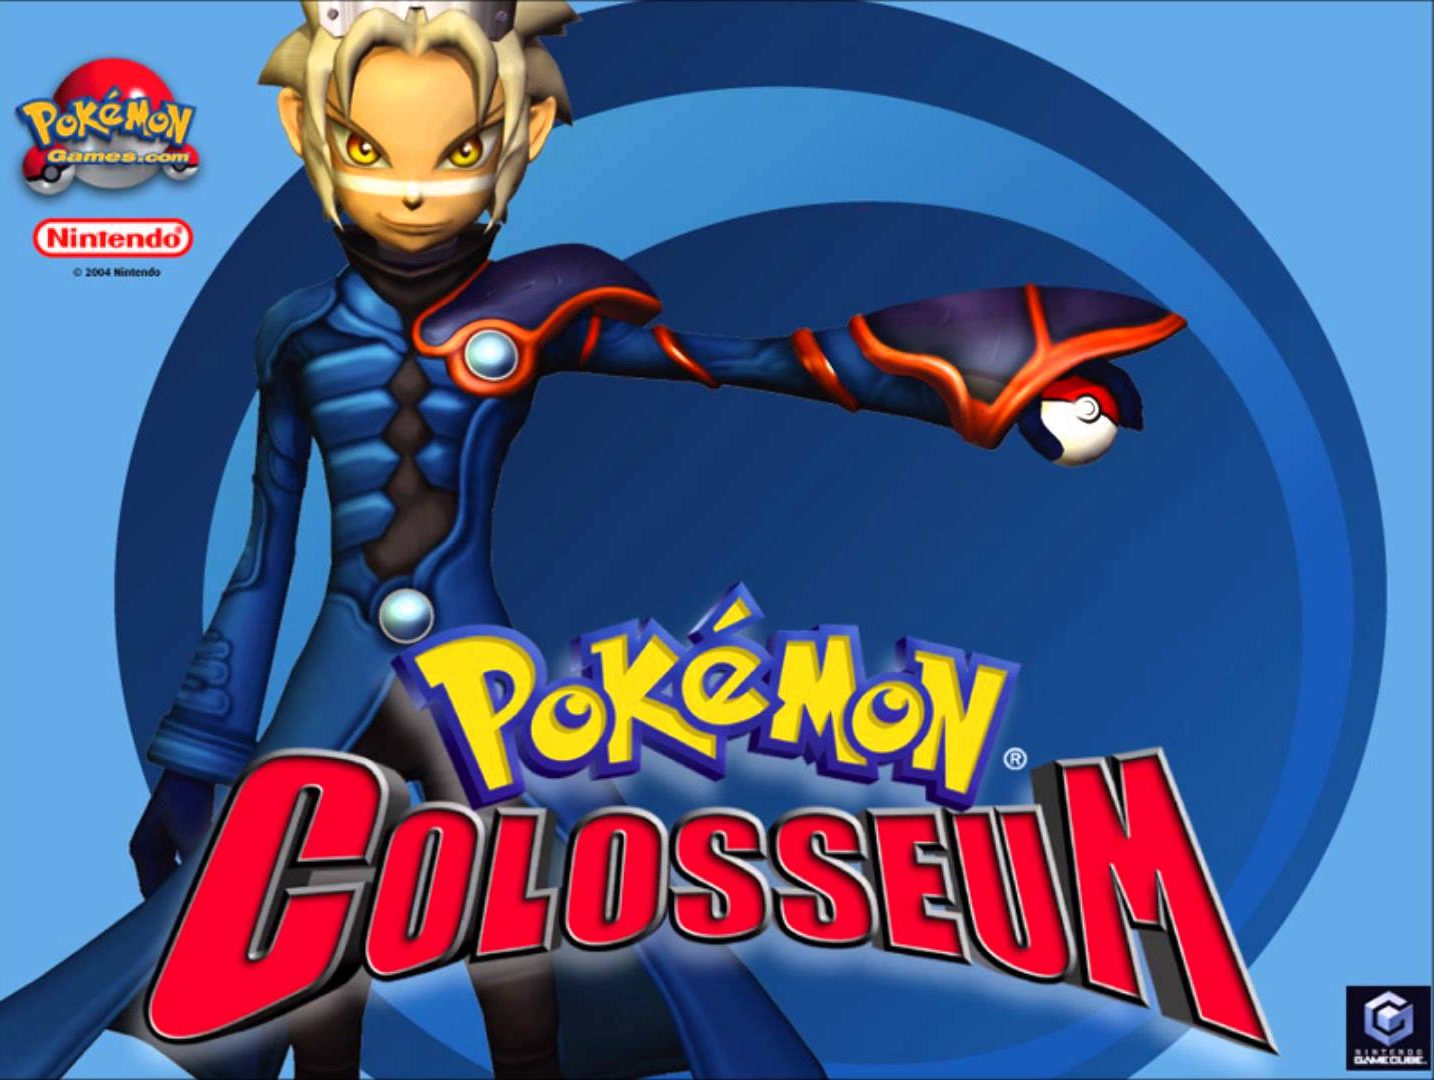 'Pokémon Colosseum'